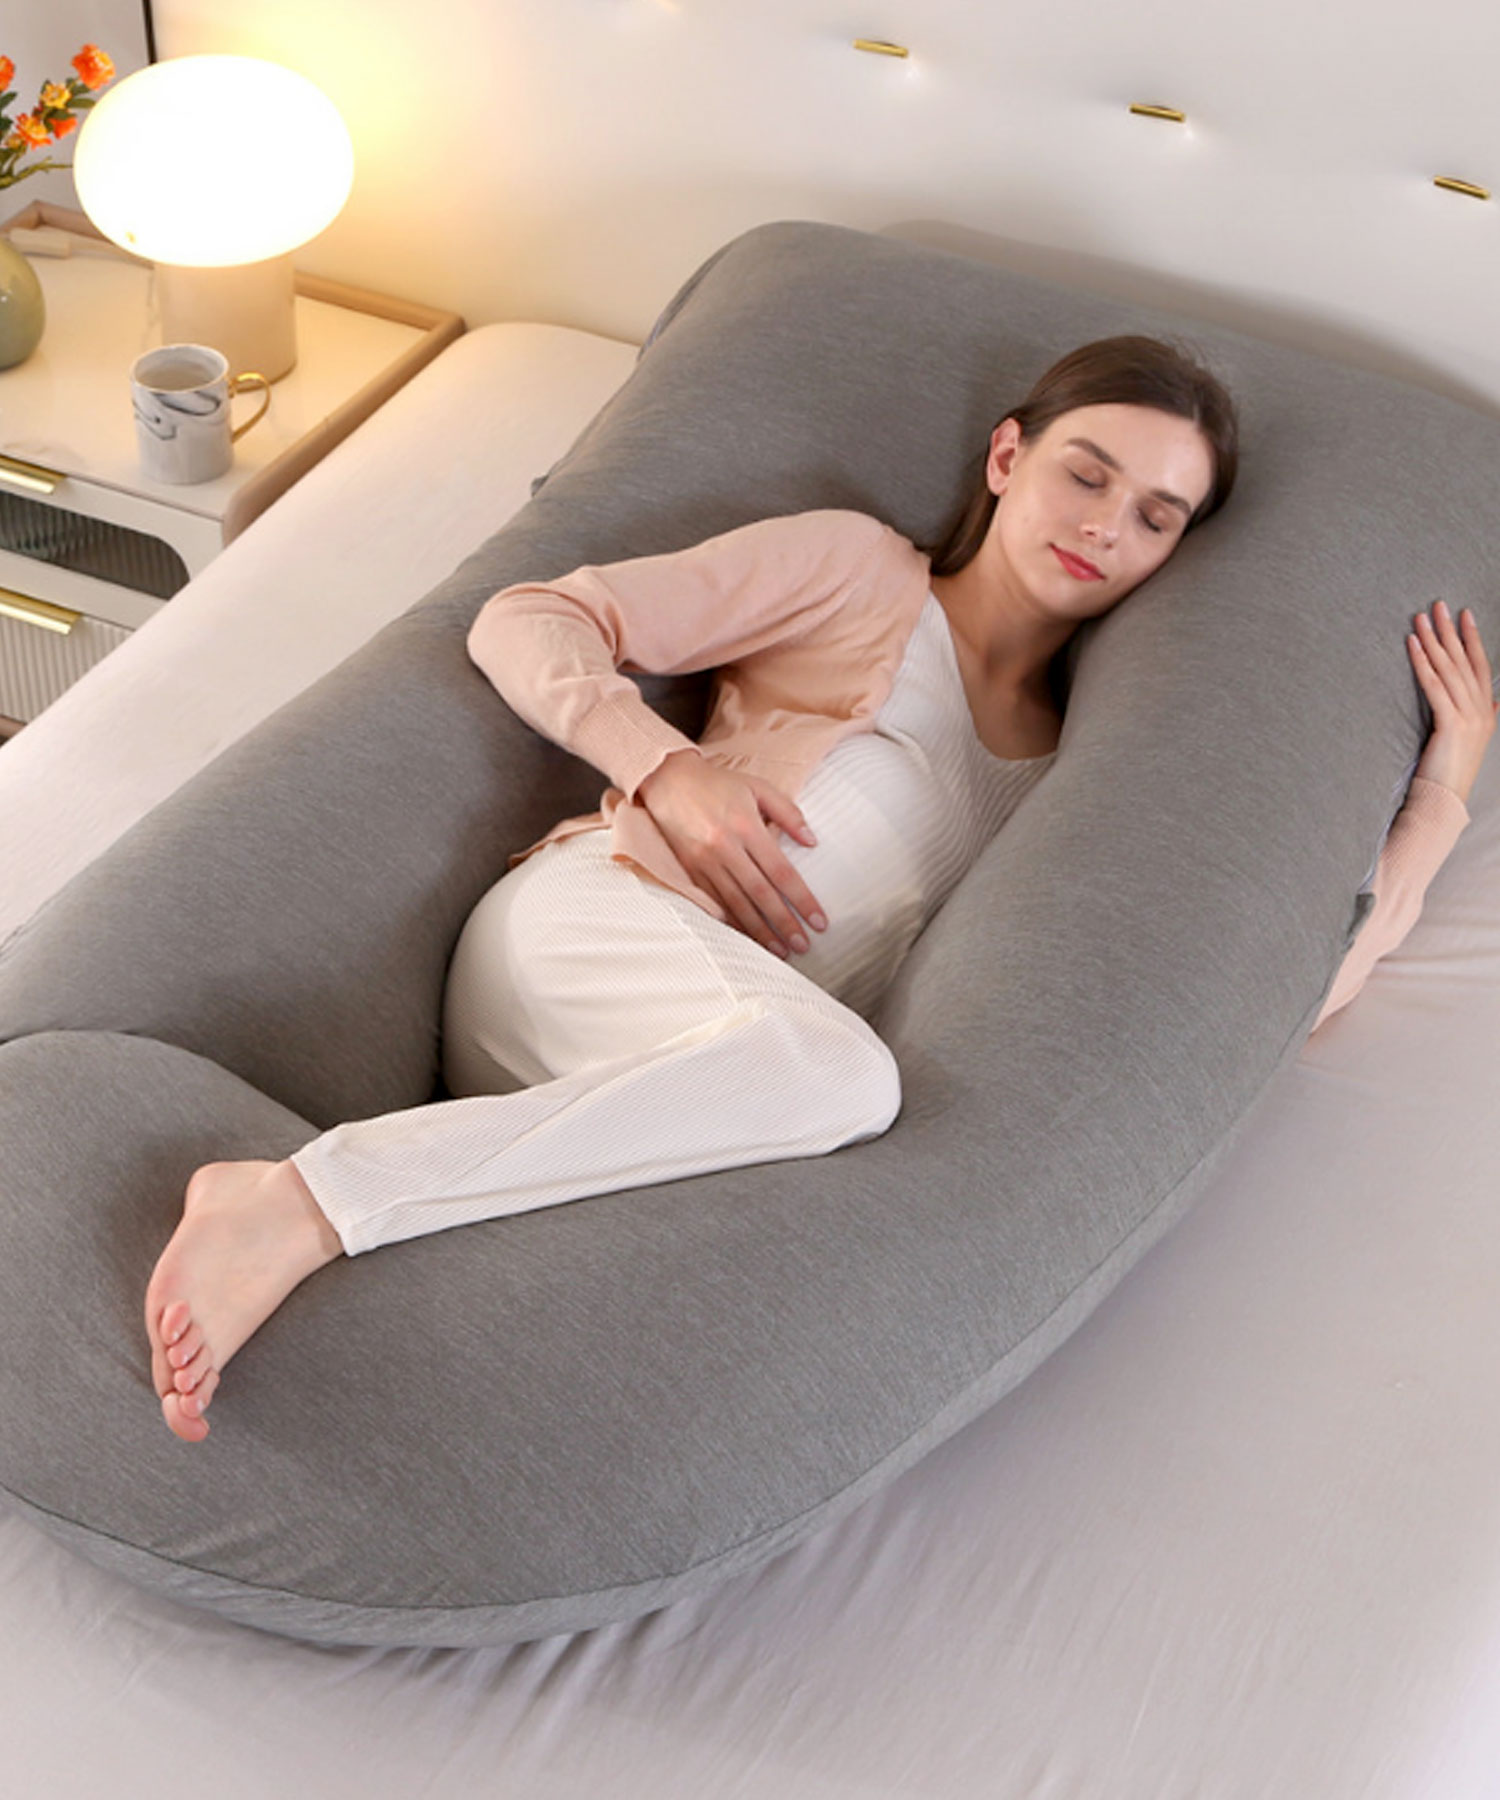 抱き枕 妊婦 U型 冷感 授乳クッション 横向き寝用枕 大きい 抱き枕カバー 洗える 4素材 ピロー...